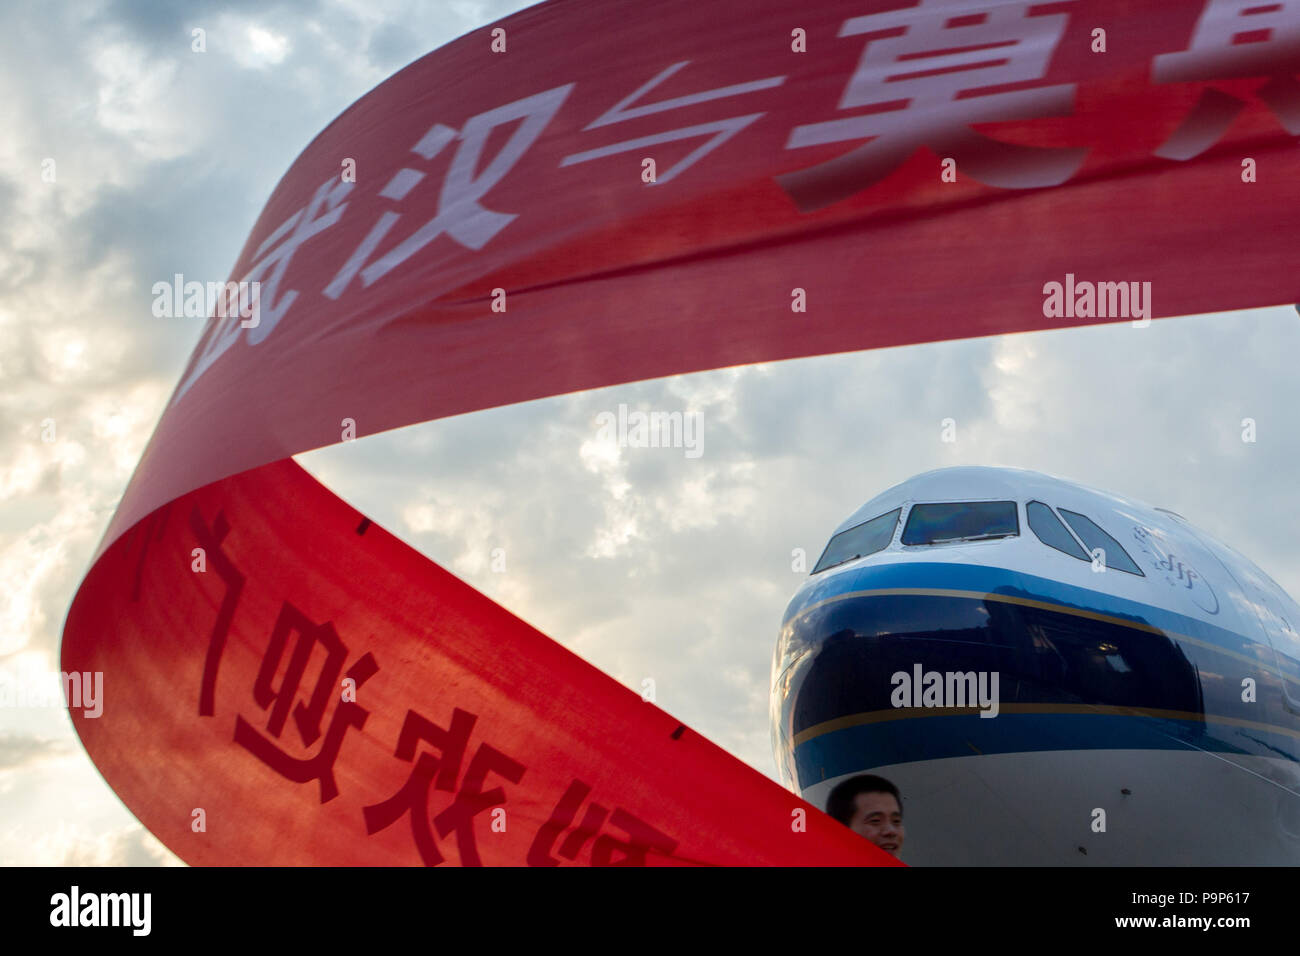 China Southern Airlines a vu des avions à réaction après vol innaugural Wuhan-Guangzhou enroute - Moscou à l'aéroport international Sheremetyevo, Banque D'Images